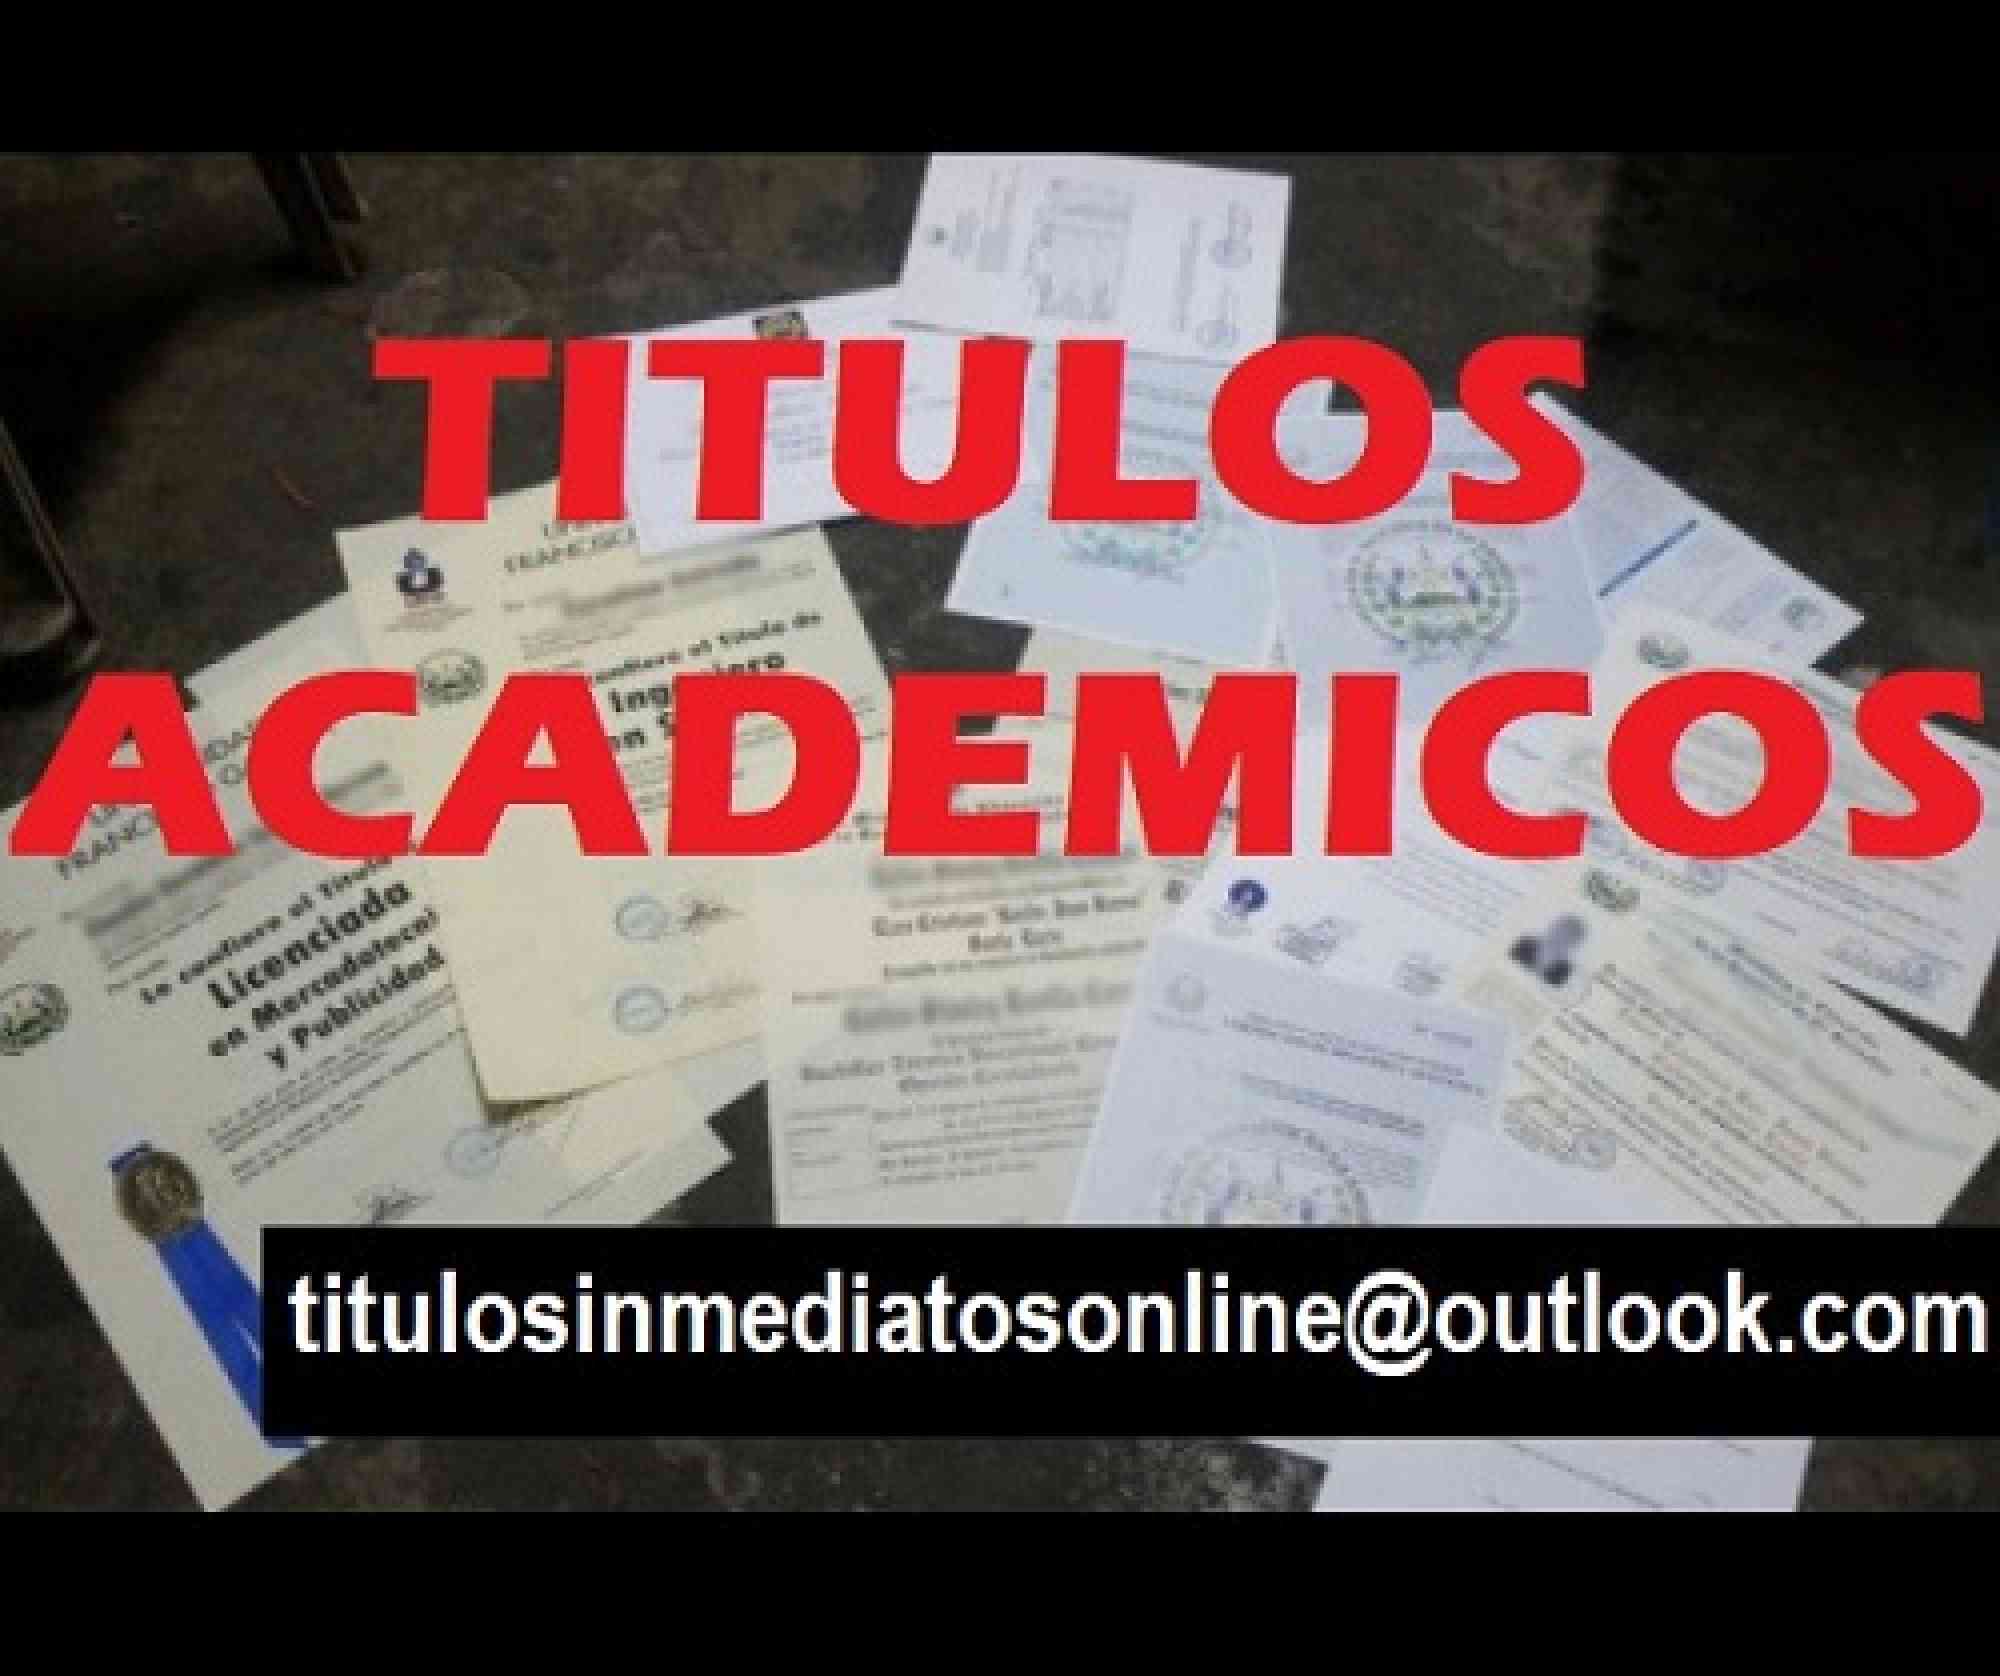 Titulos academicos en anuncio clasificado